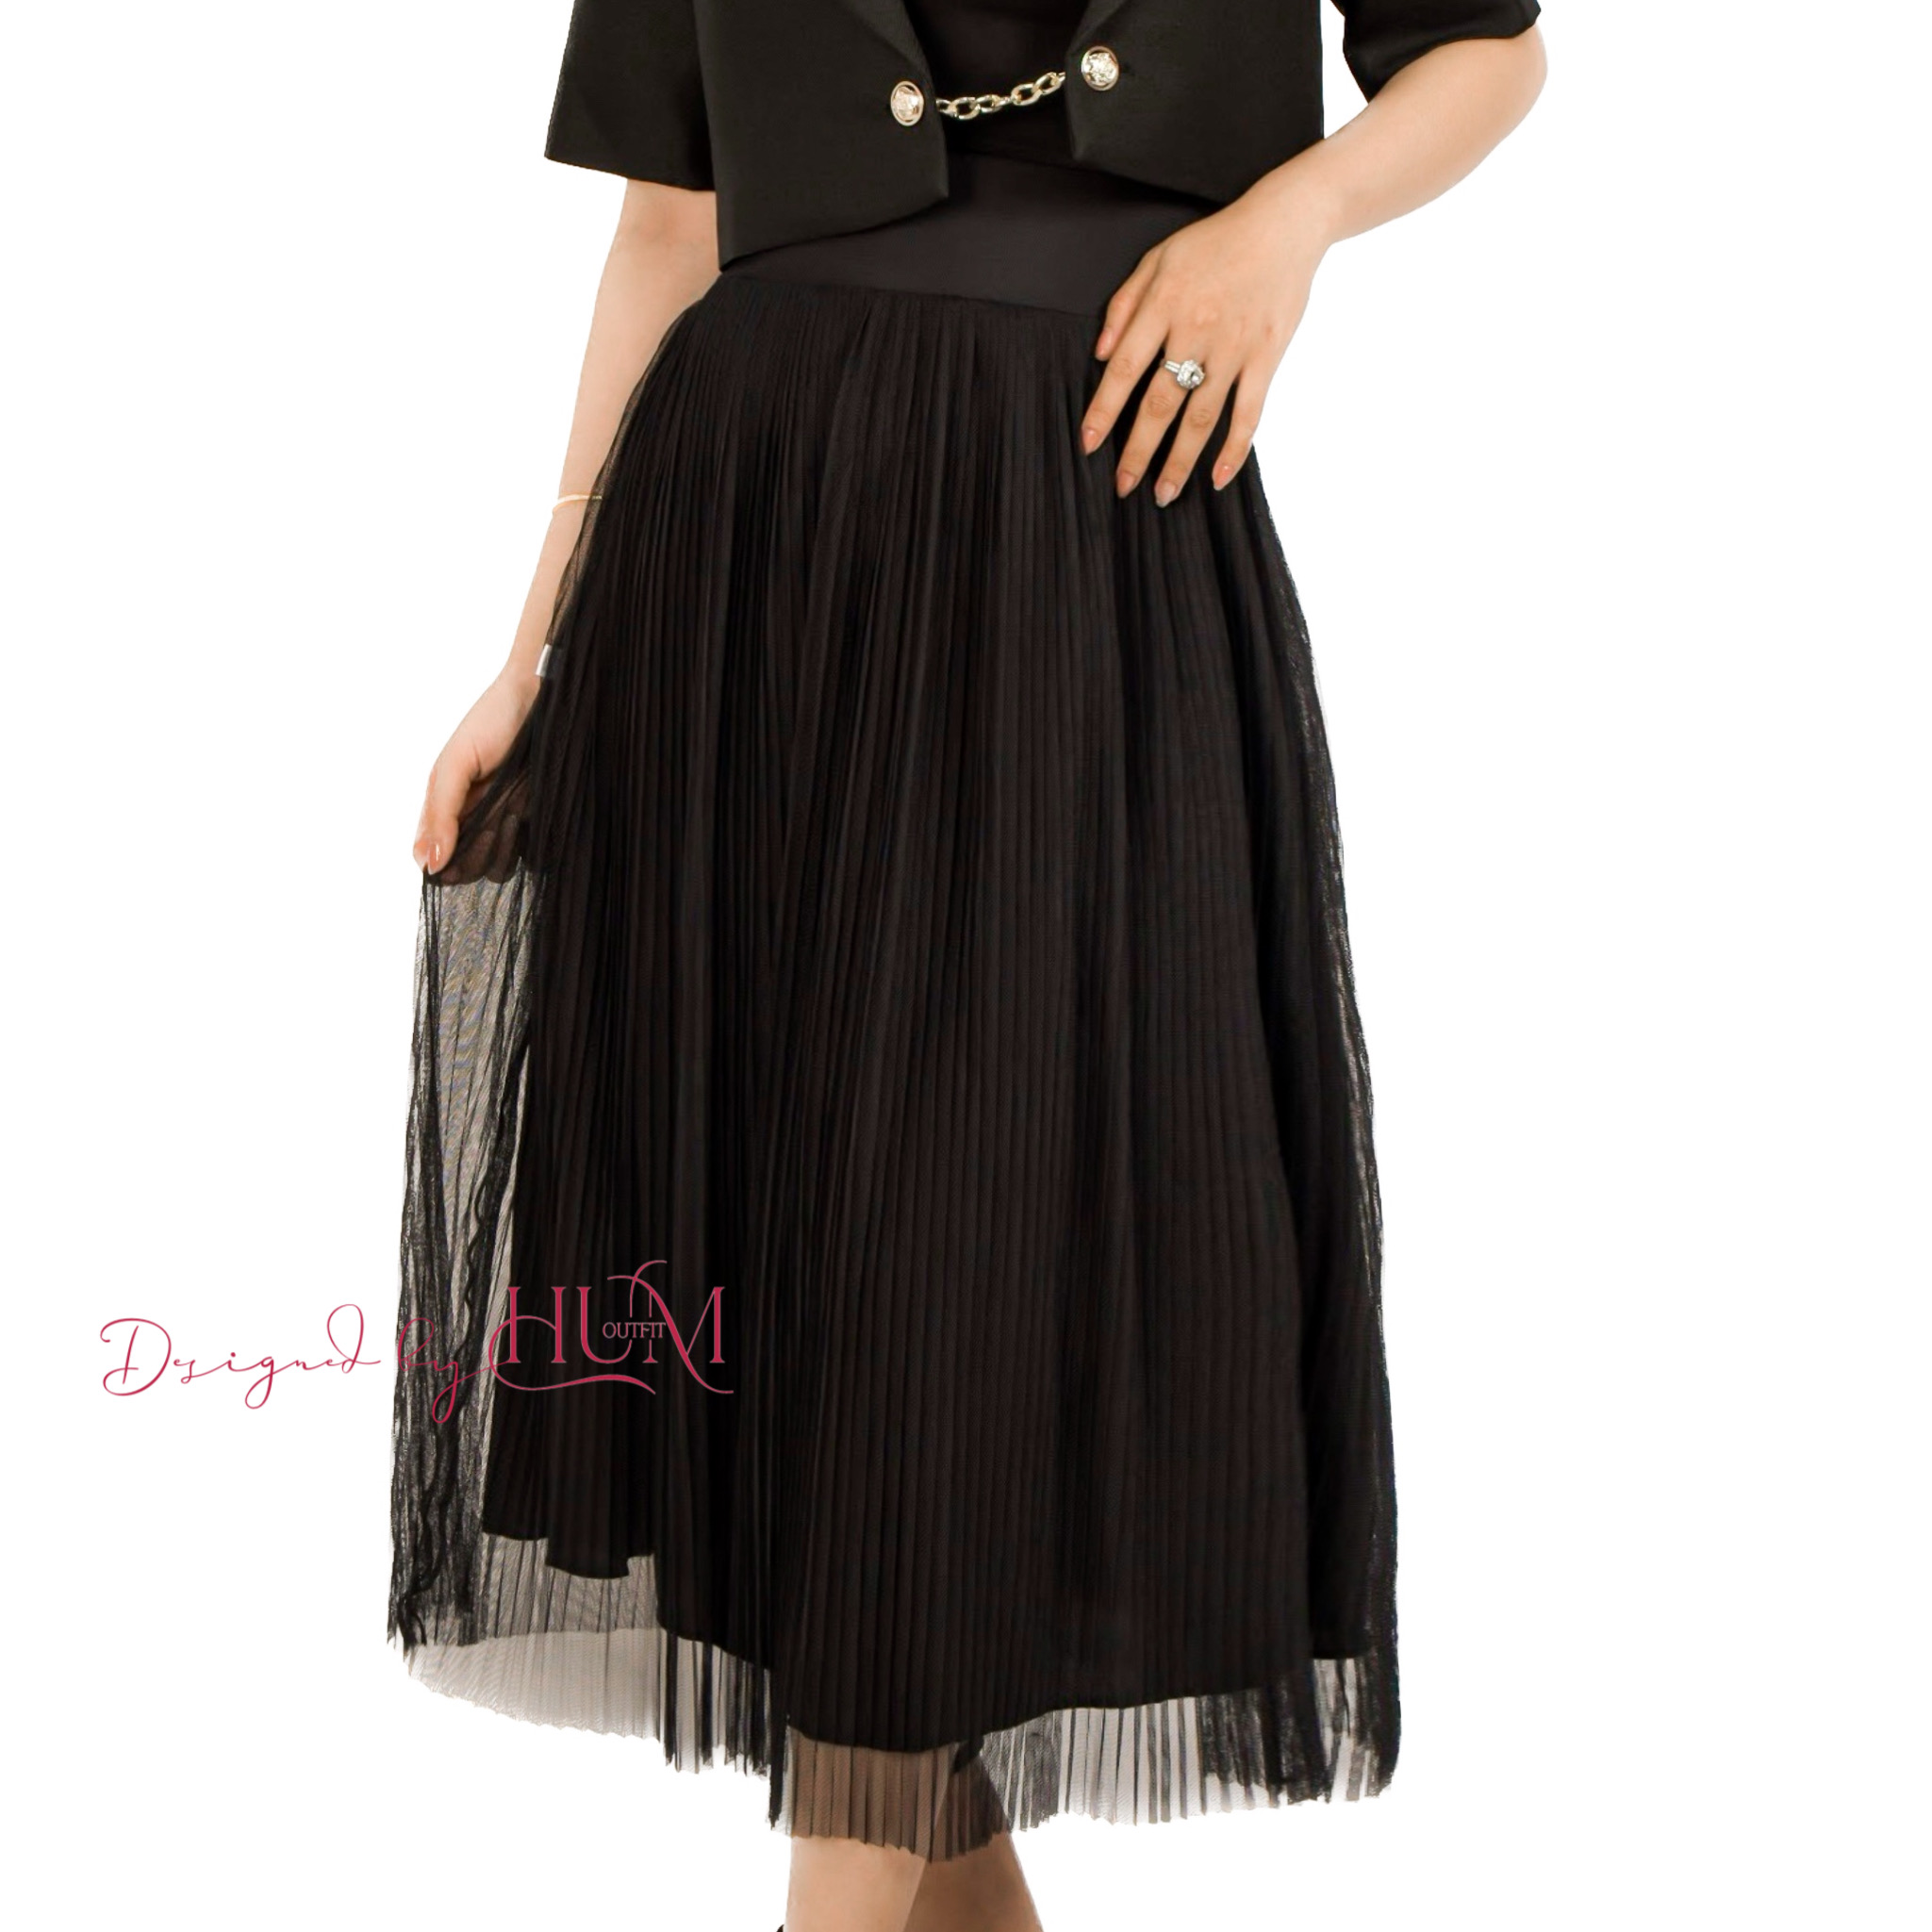 Chân váy Maxy, chân váy dài, xoè nhẹ, 2 lớp lụa lót và lưới, form đứng thời trang, tôn dáng, màu đen - V01D